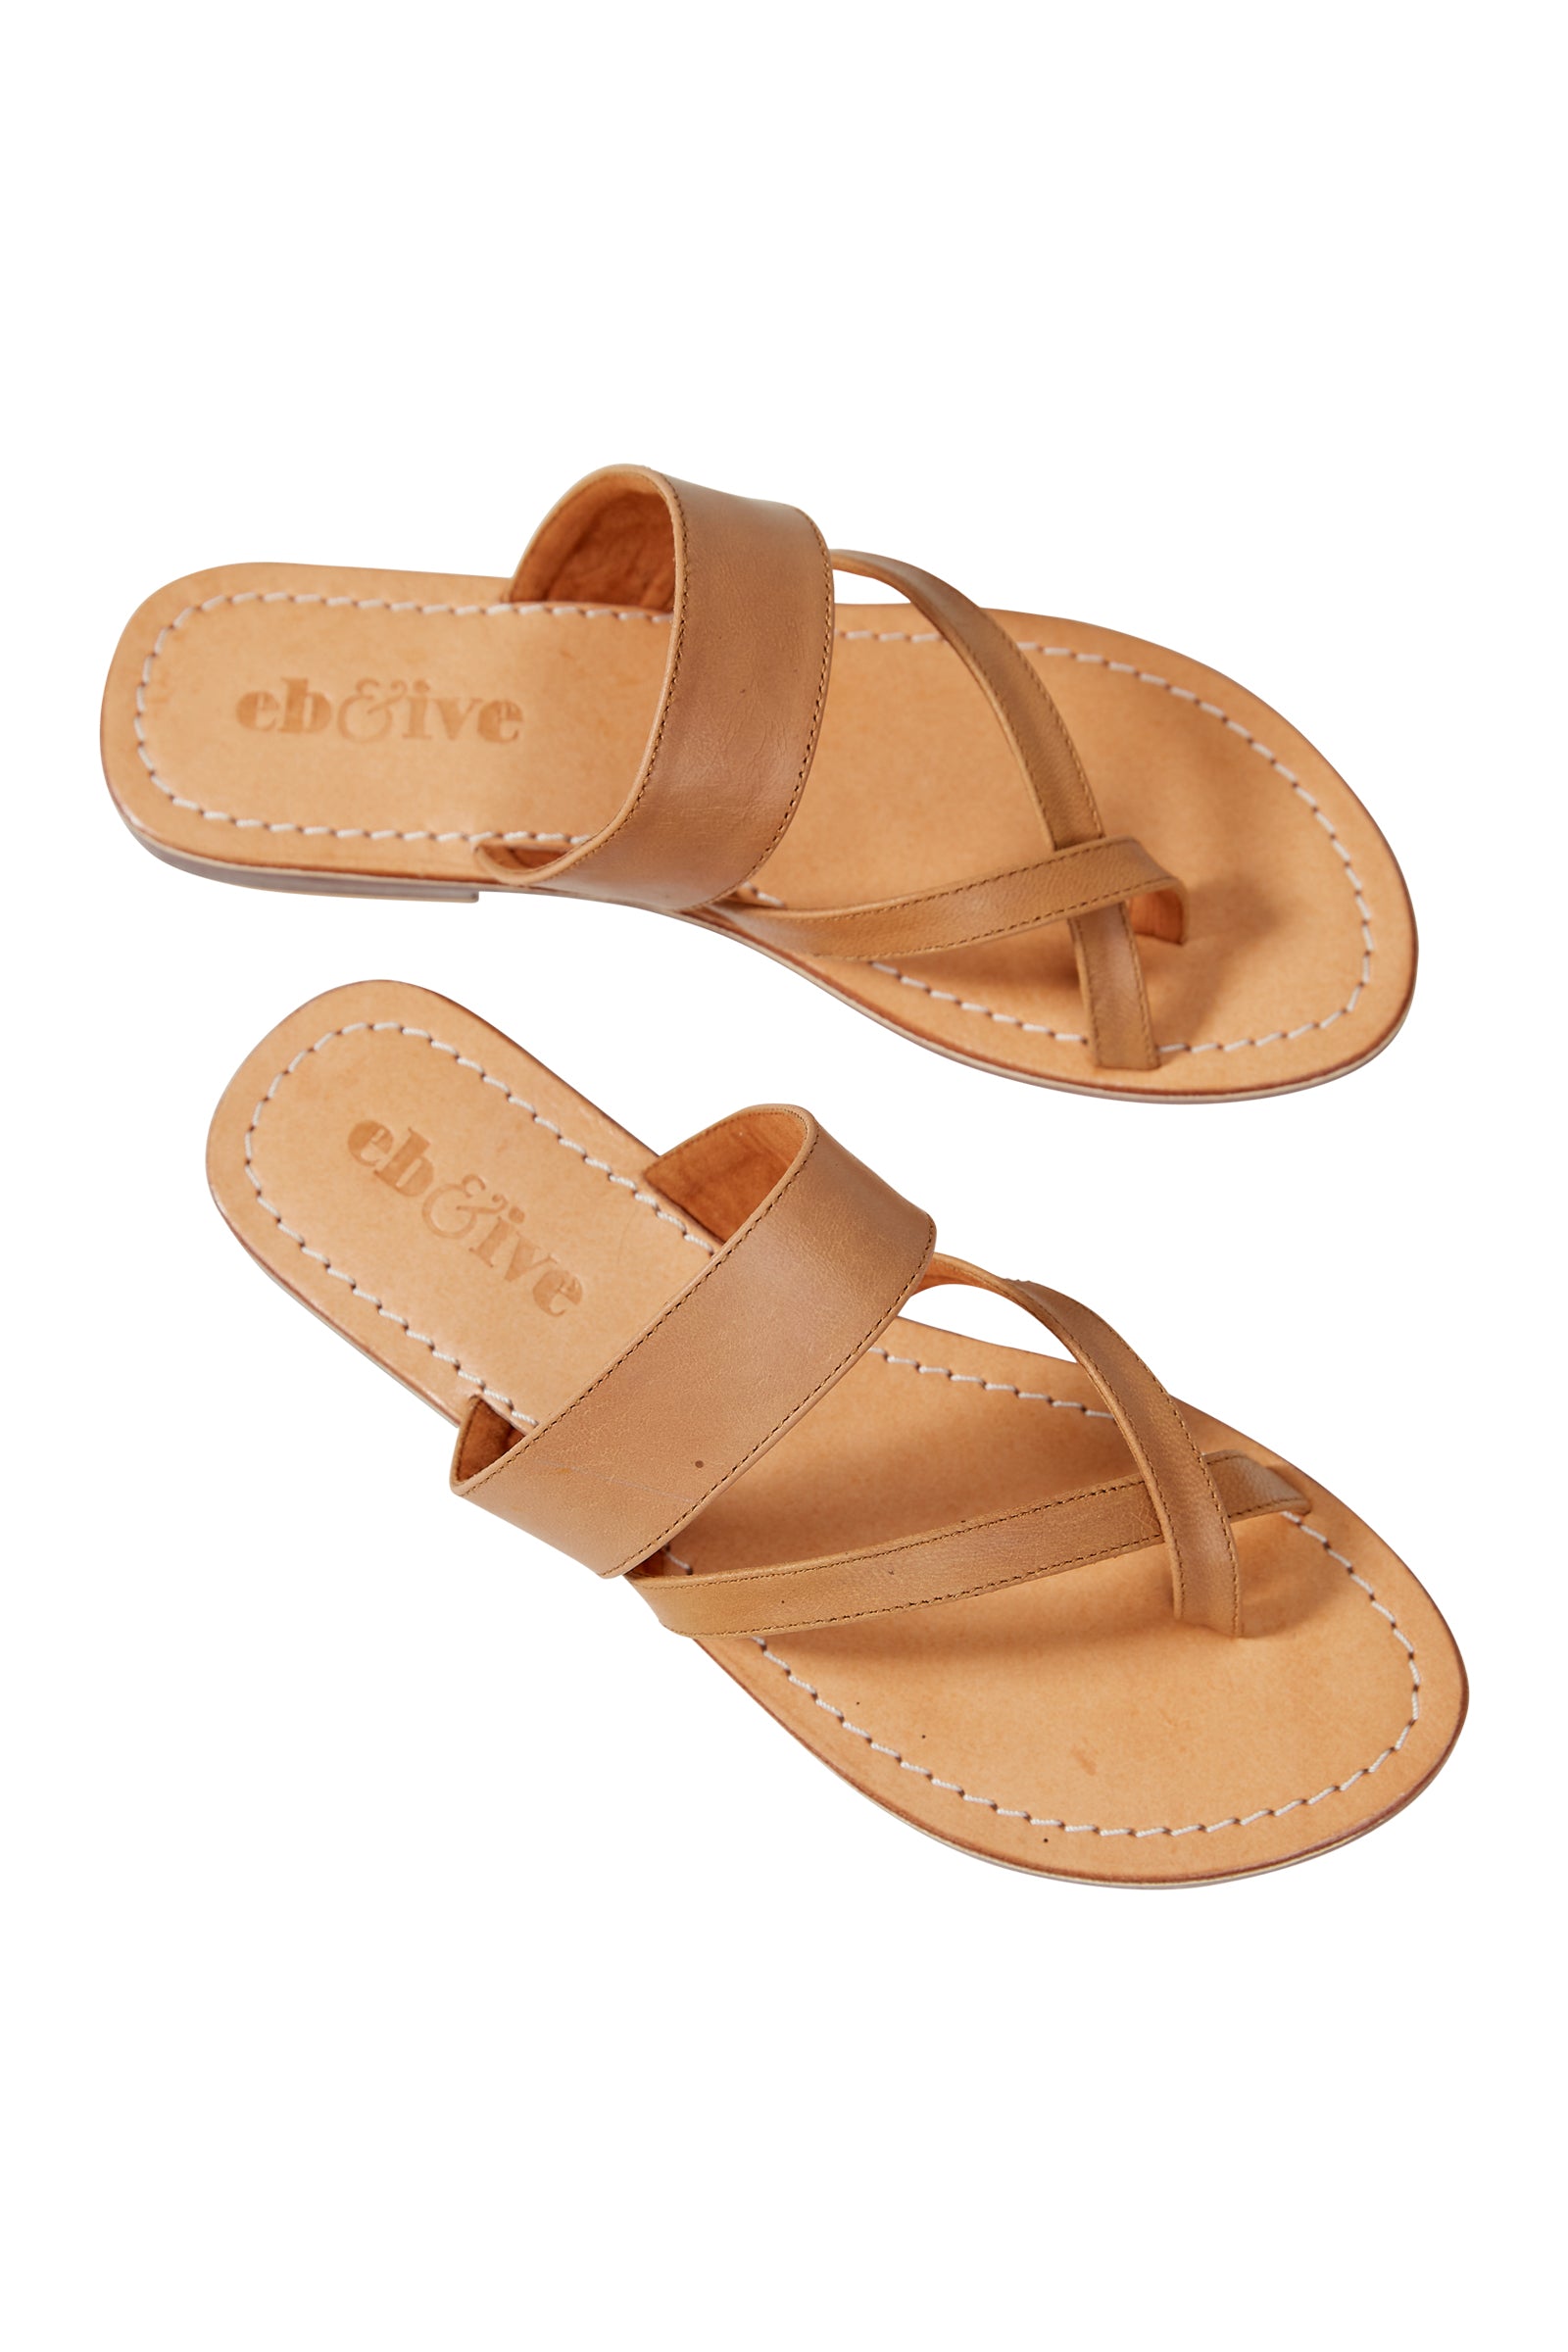 Verve Sandal - Caramel - eb&ive Footwear - Sandals